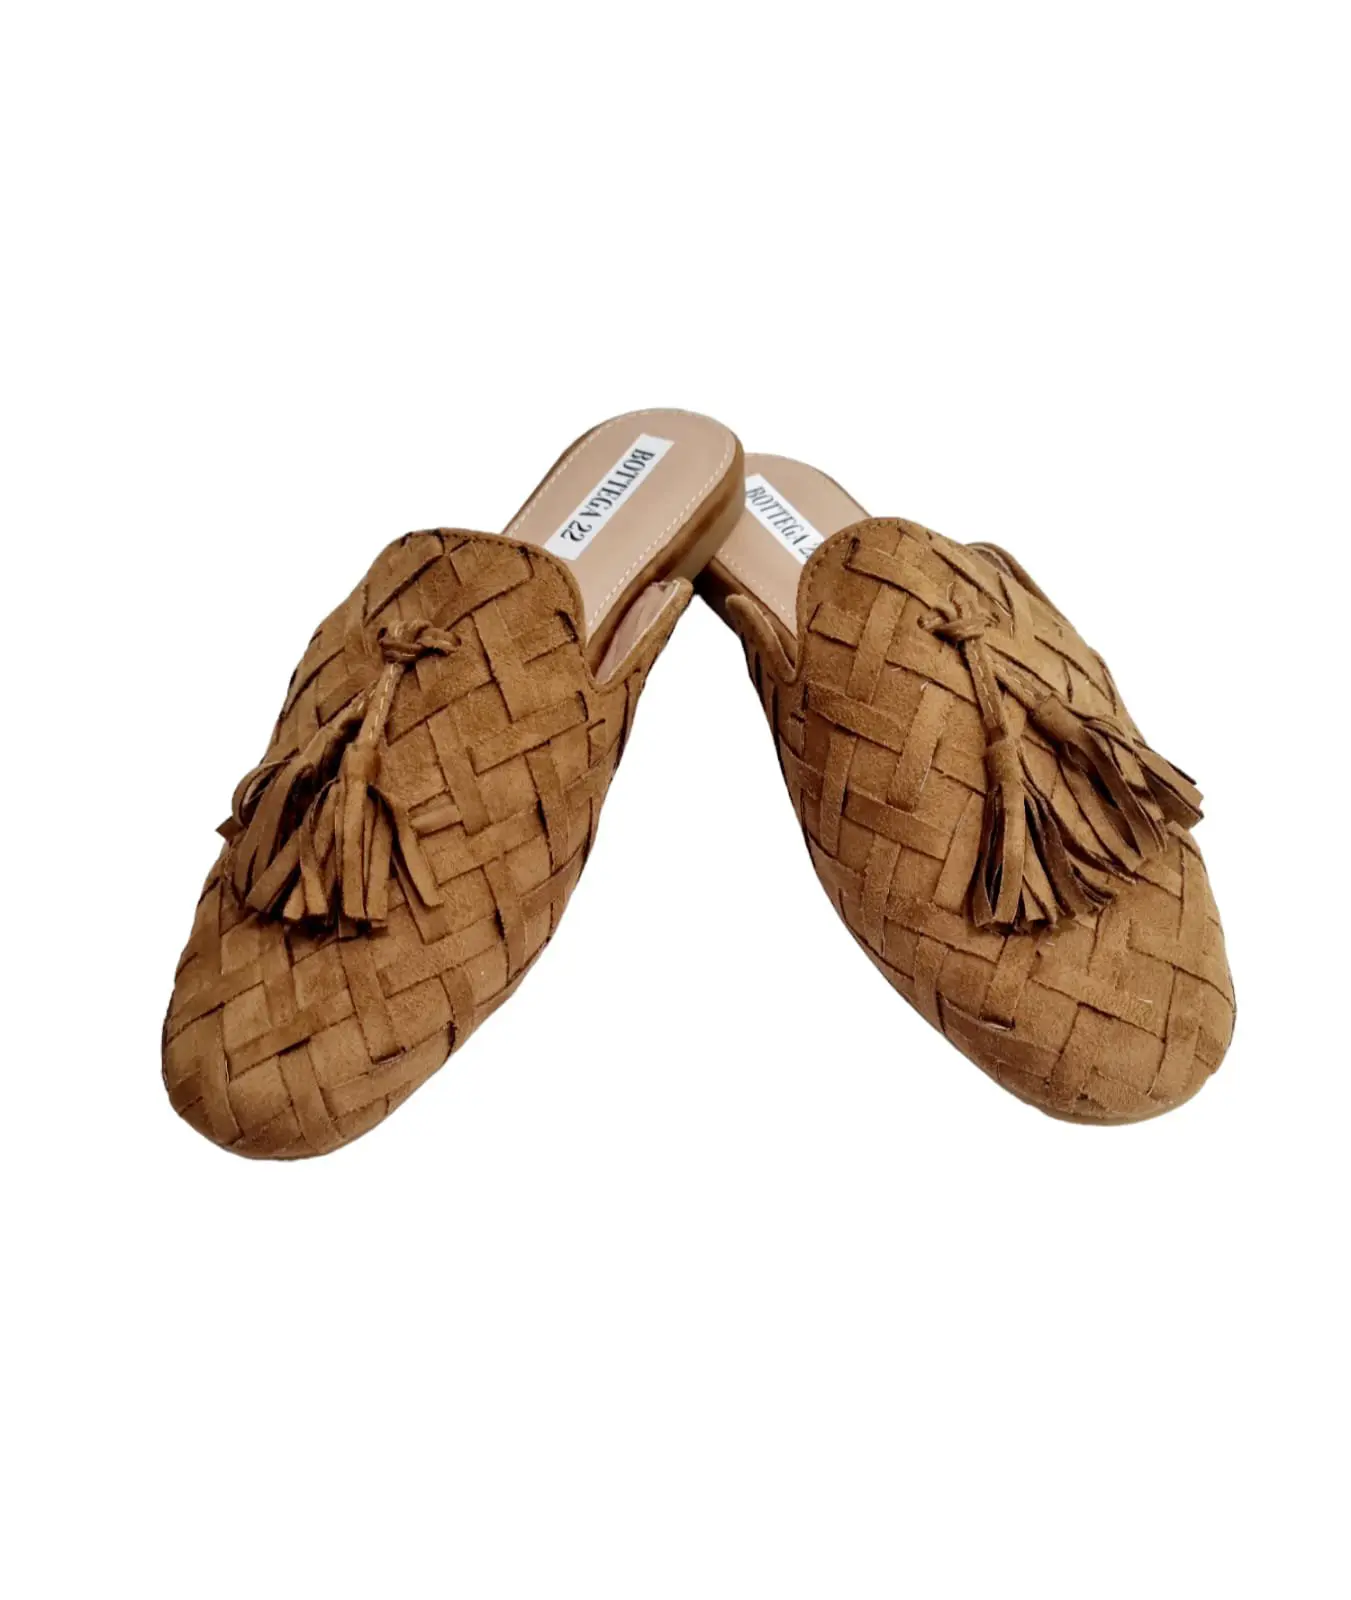 Zapato de ante tejido con borlas, color camel, suela antideslizante elevada de 1,5 cm.